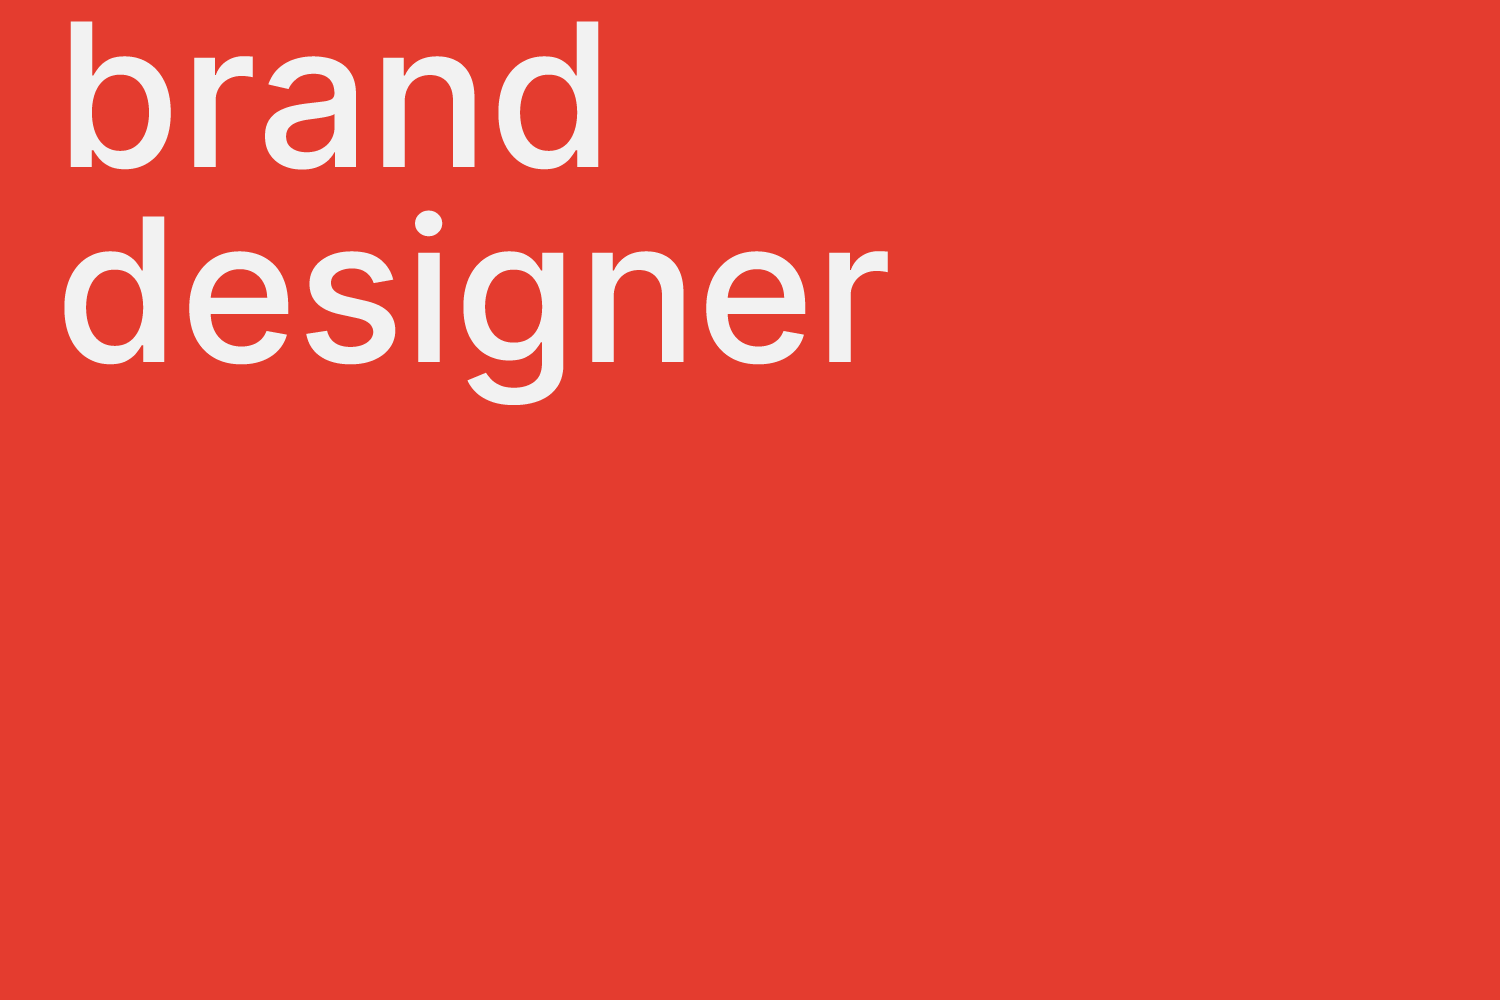 senior brand designer